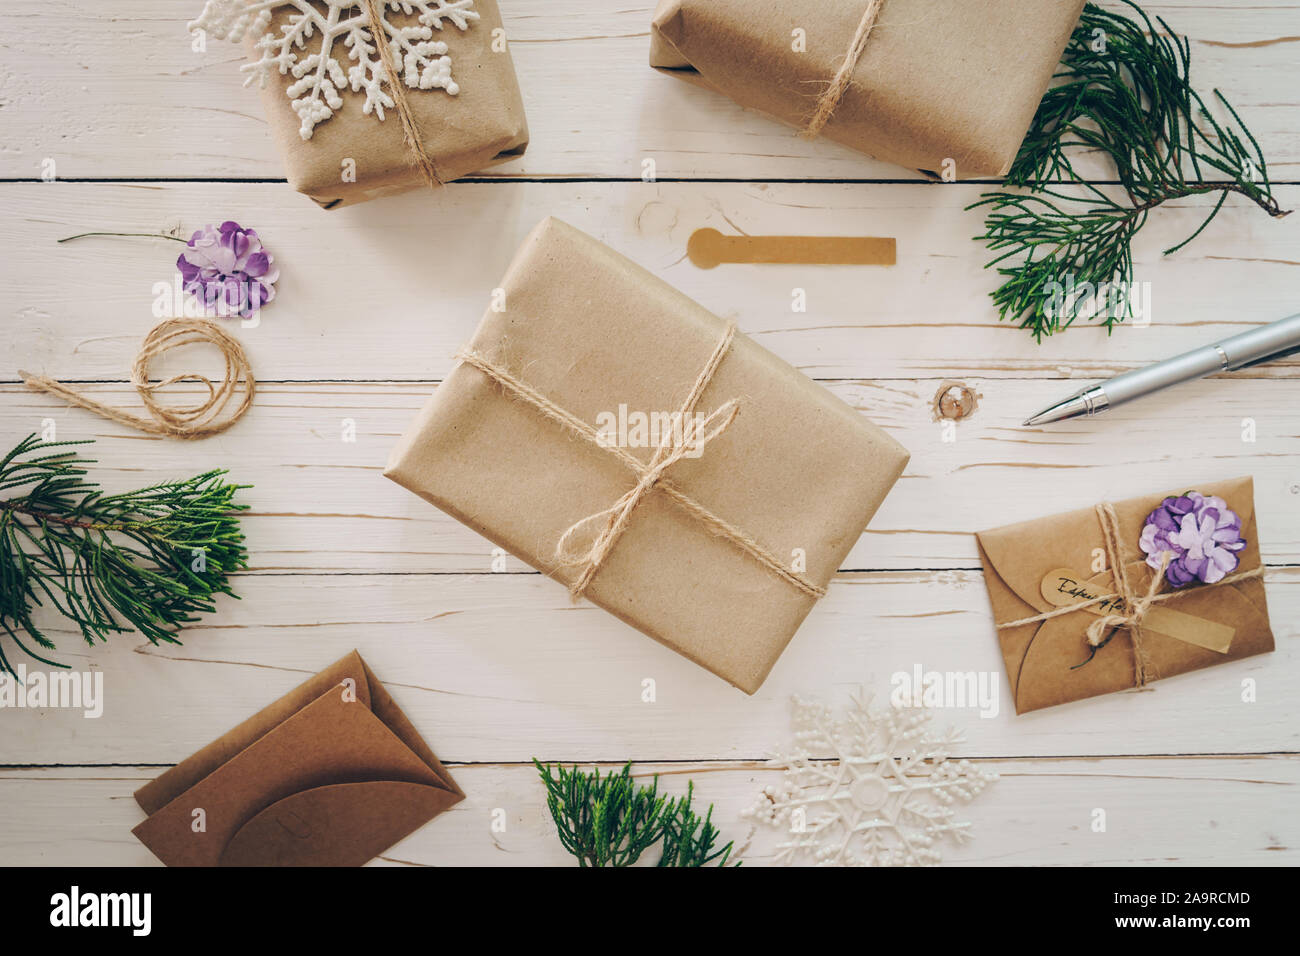 Vista superior de la caja para regalo y tarjeta de navidad en la mesa de madera con decoración de Navidad. Foto de stock